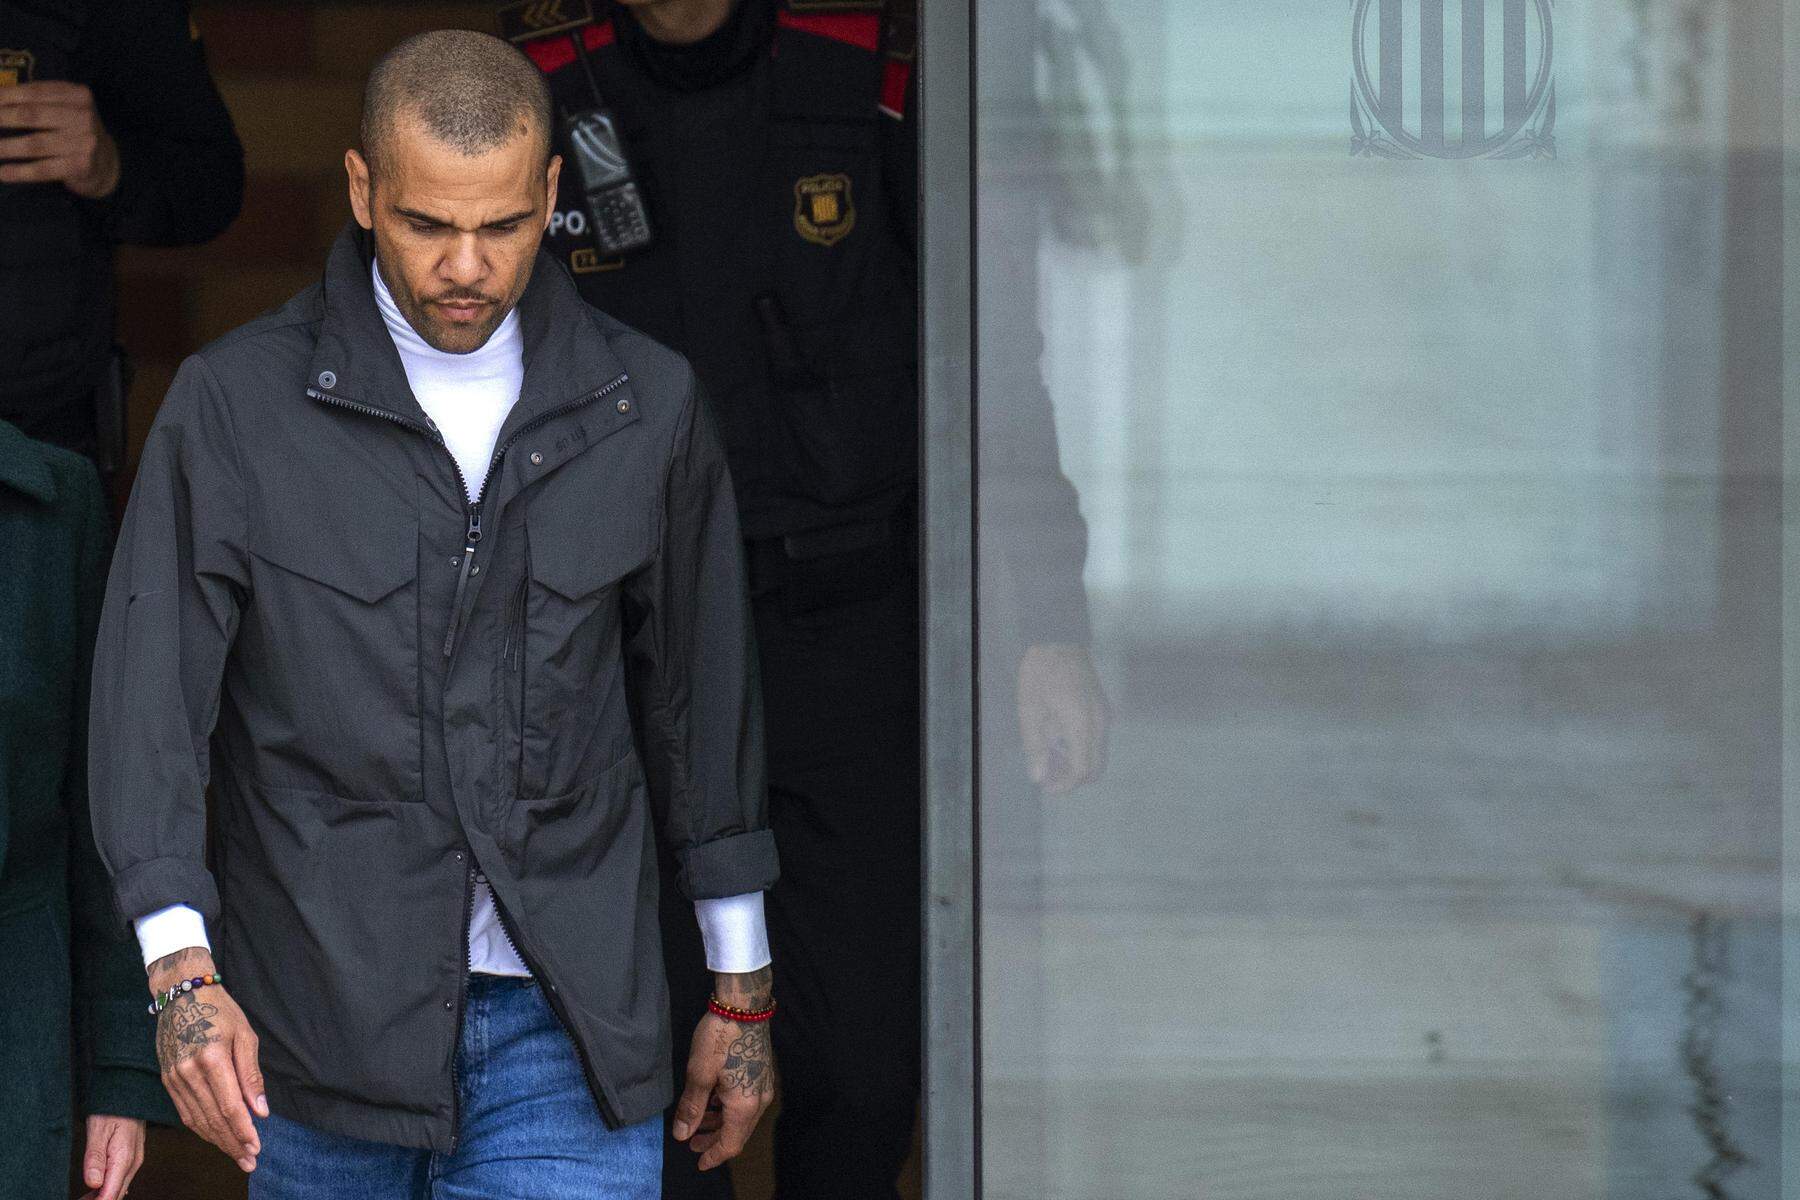 Darf Gefängnis verlassen: Fußball-Star Dani Alves zahlt eine Million Euro Kaution